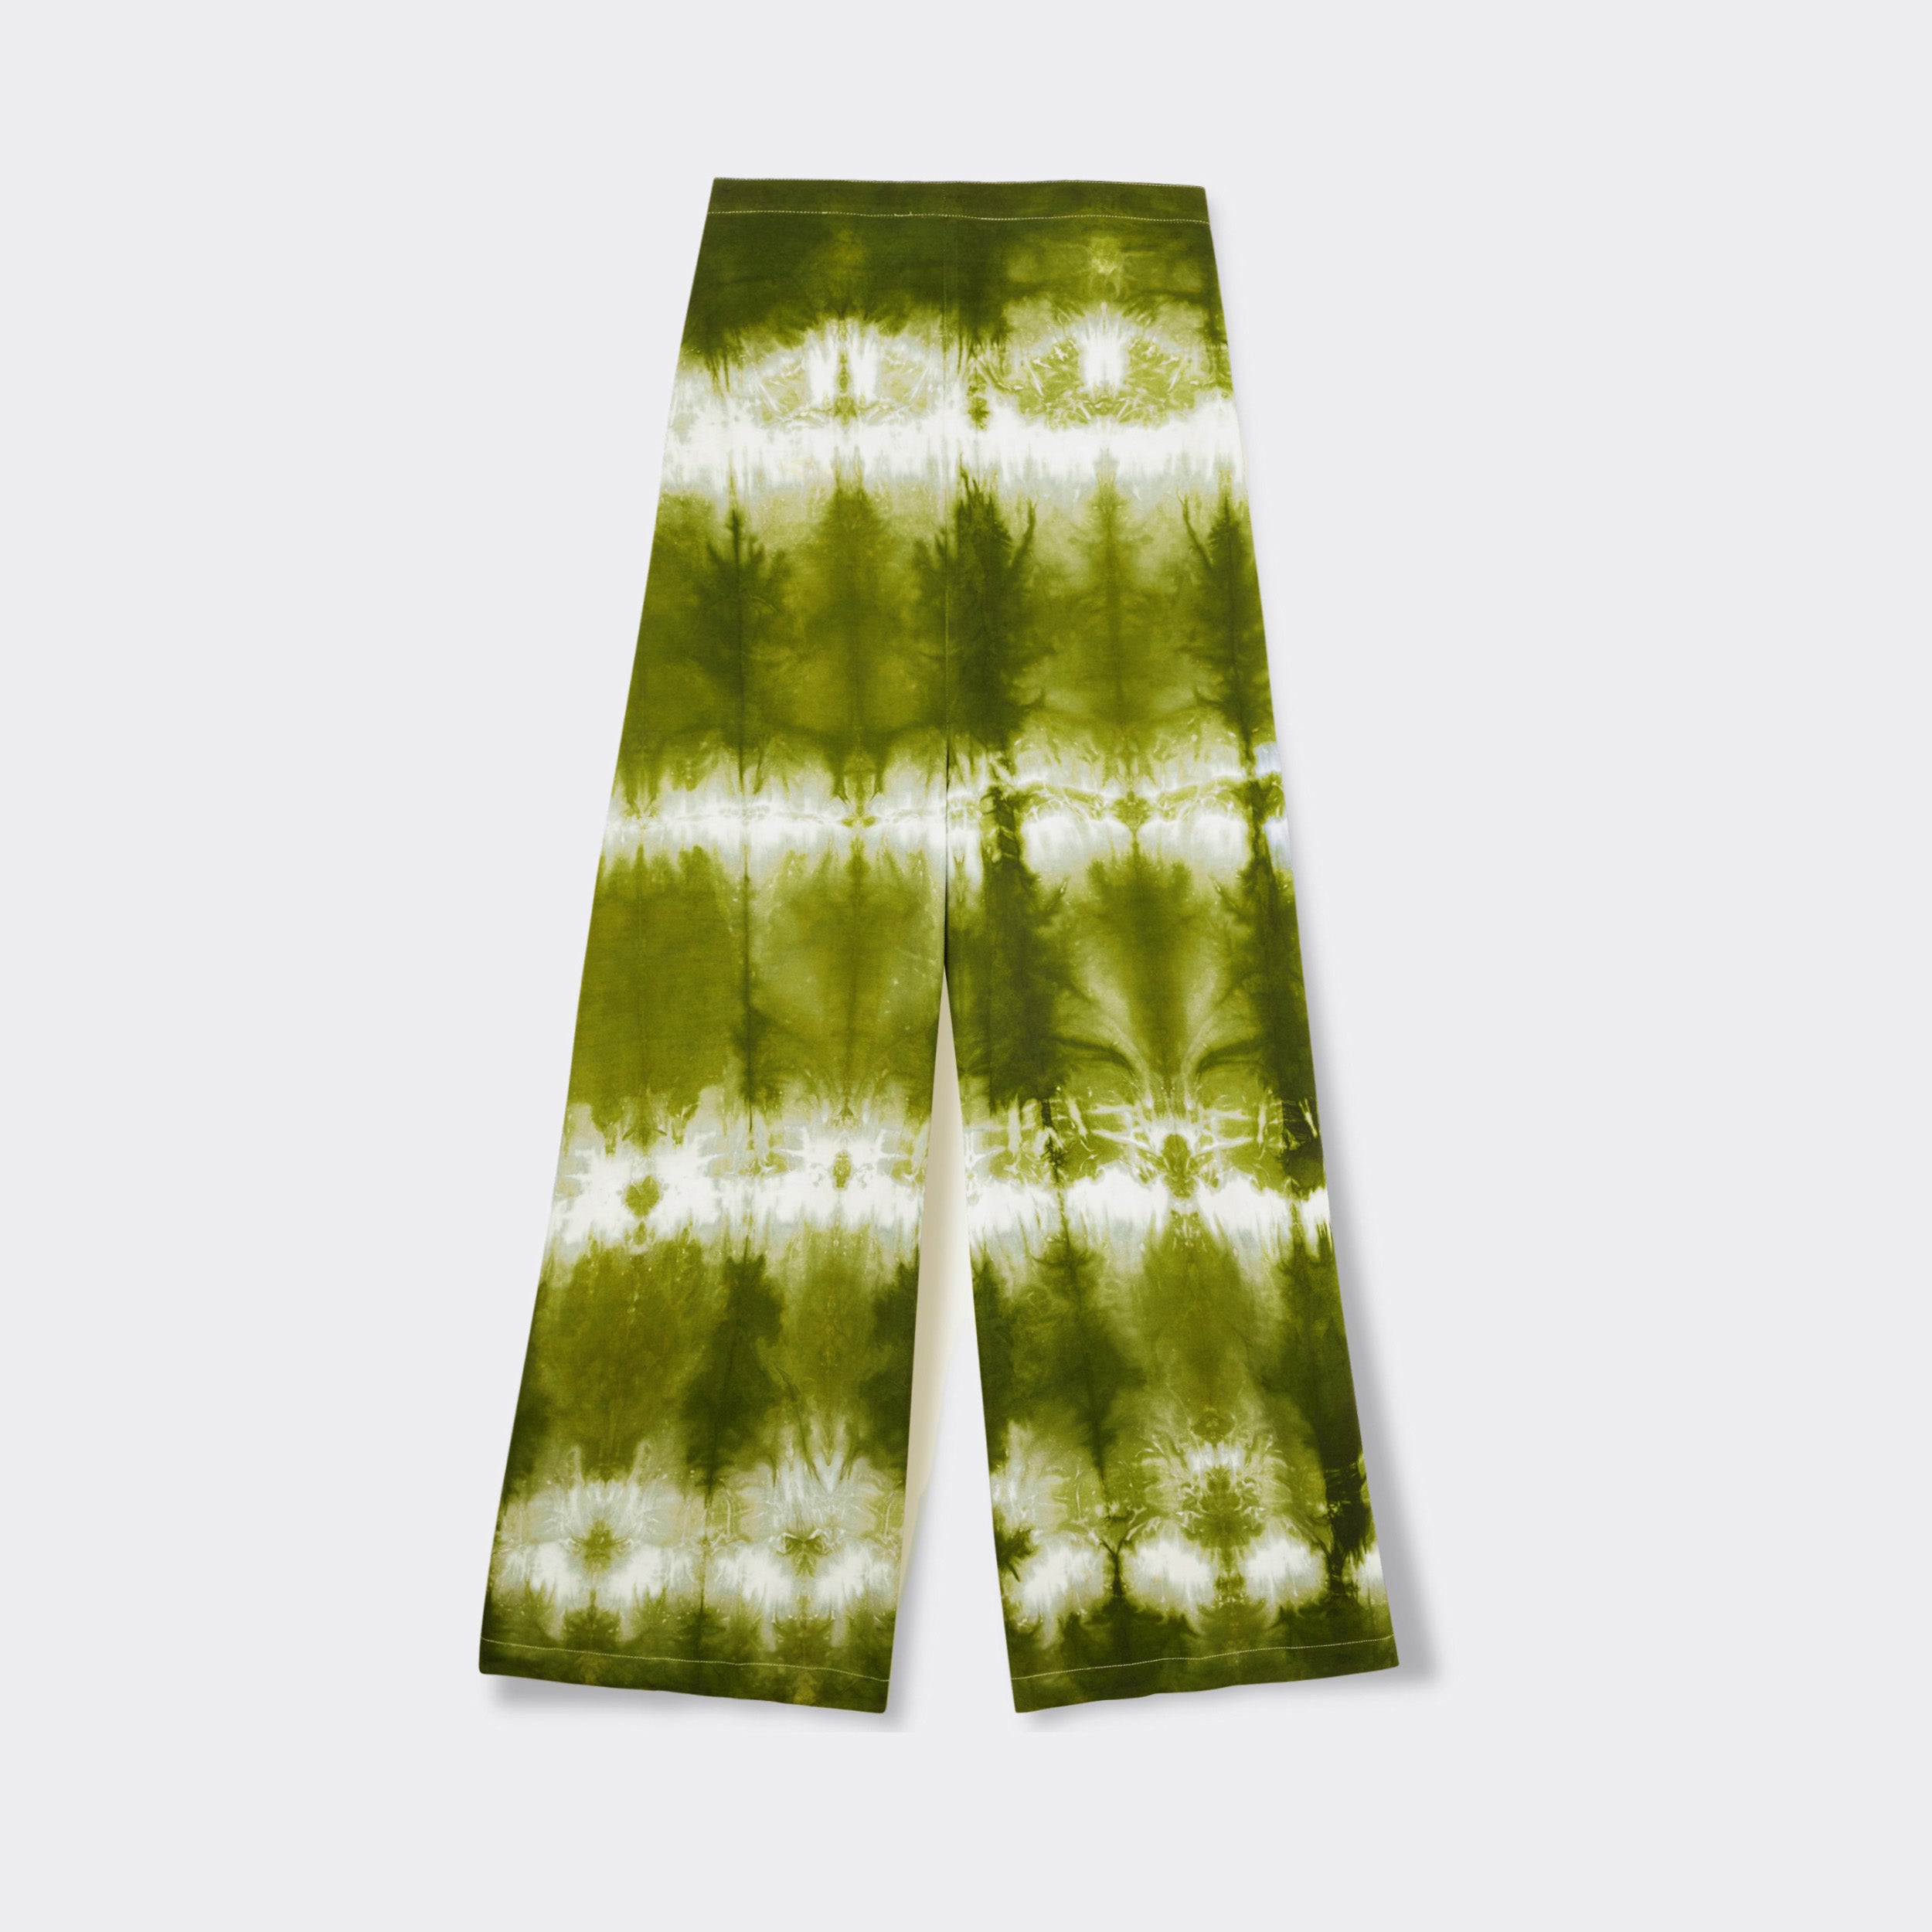 Still life:  Wrap Trousers in Tie Dye Intense Green.